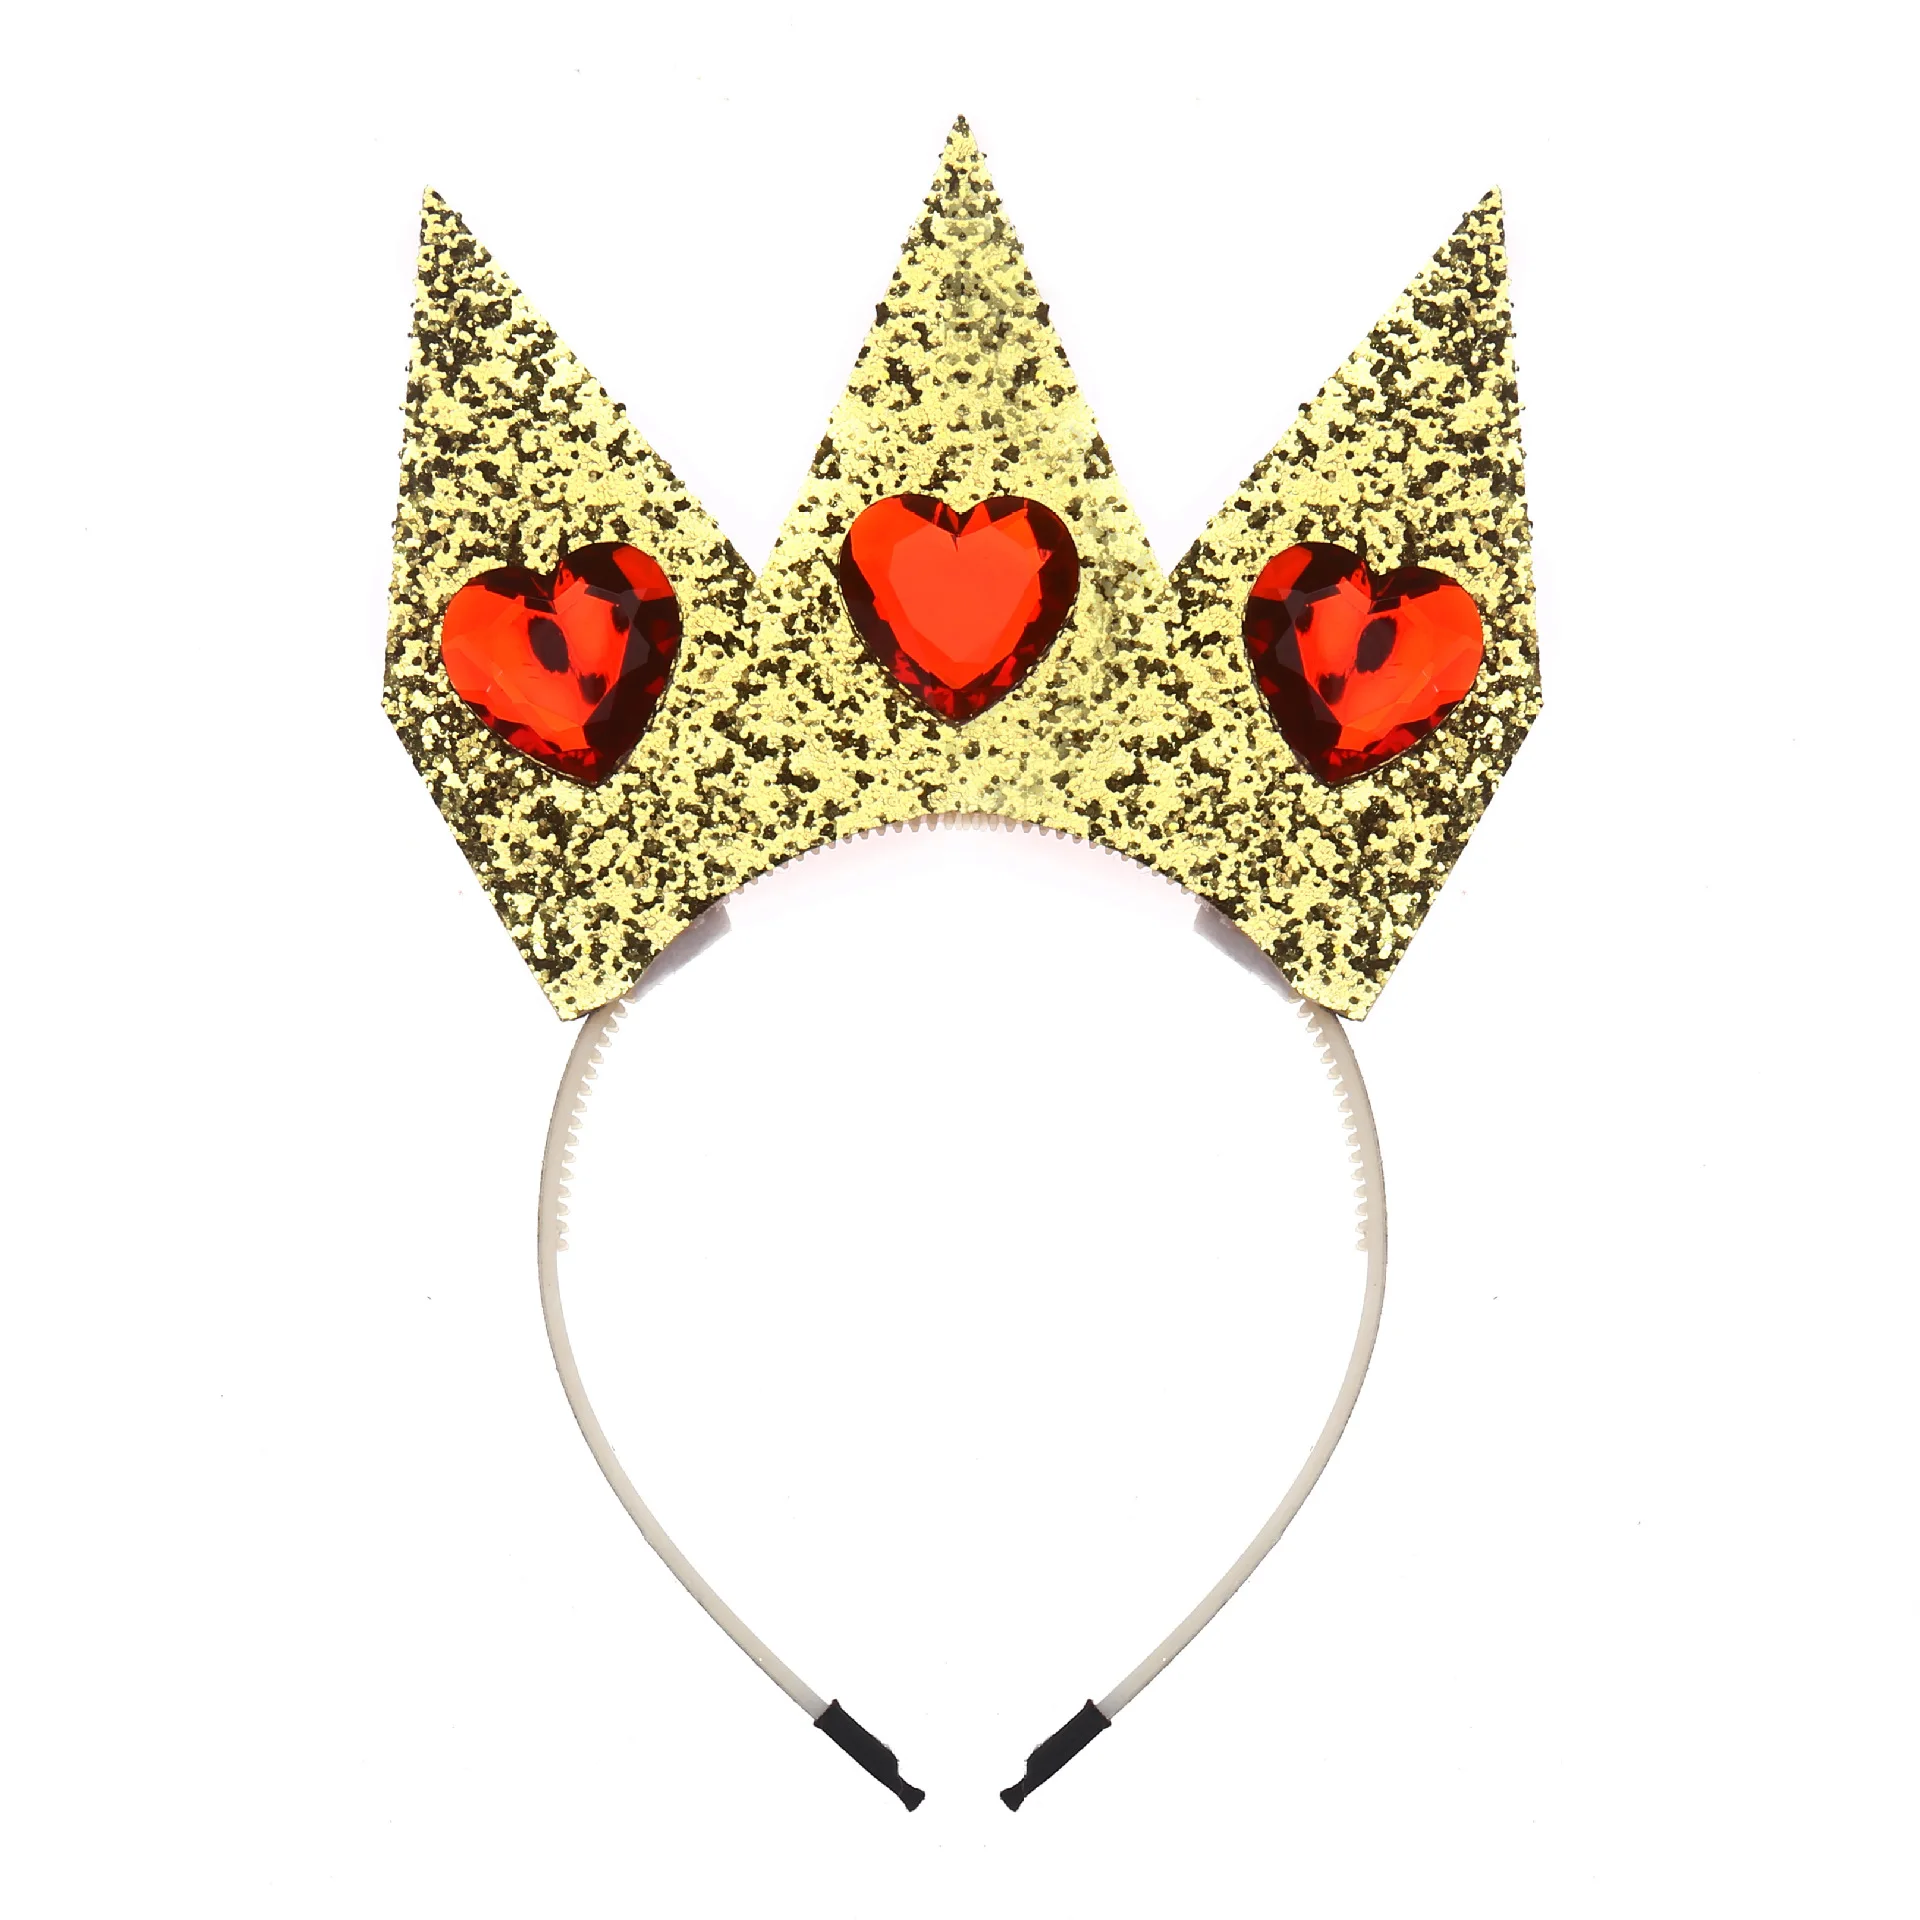 Queen of hearts accessories